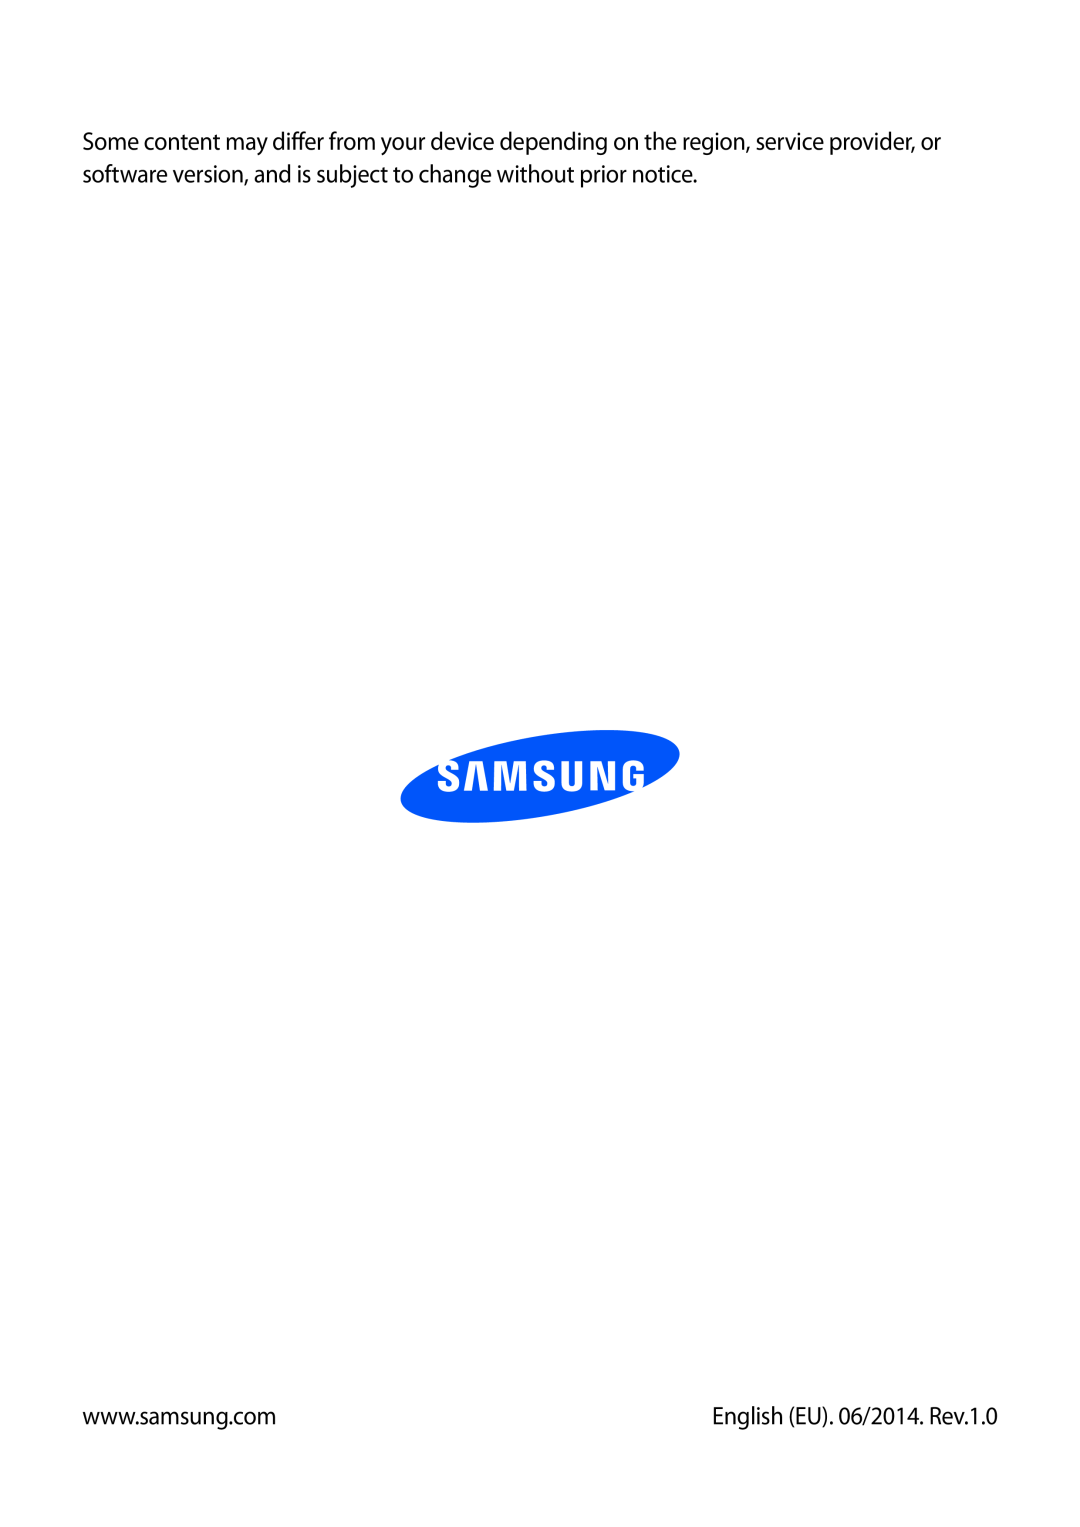 Samsung SM-T3150ZWAPAN, SM-T3150ZWAVD2, SM-T3150ZWADBT, SM-T3150ZWADTM, SM-T3150MKADBT manual English EU. 06/2014. Rev.1.0 